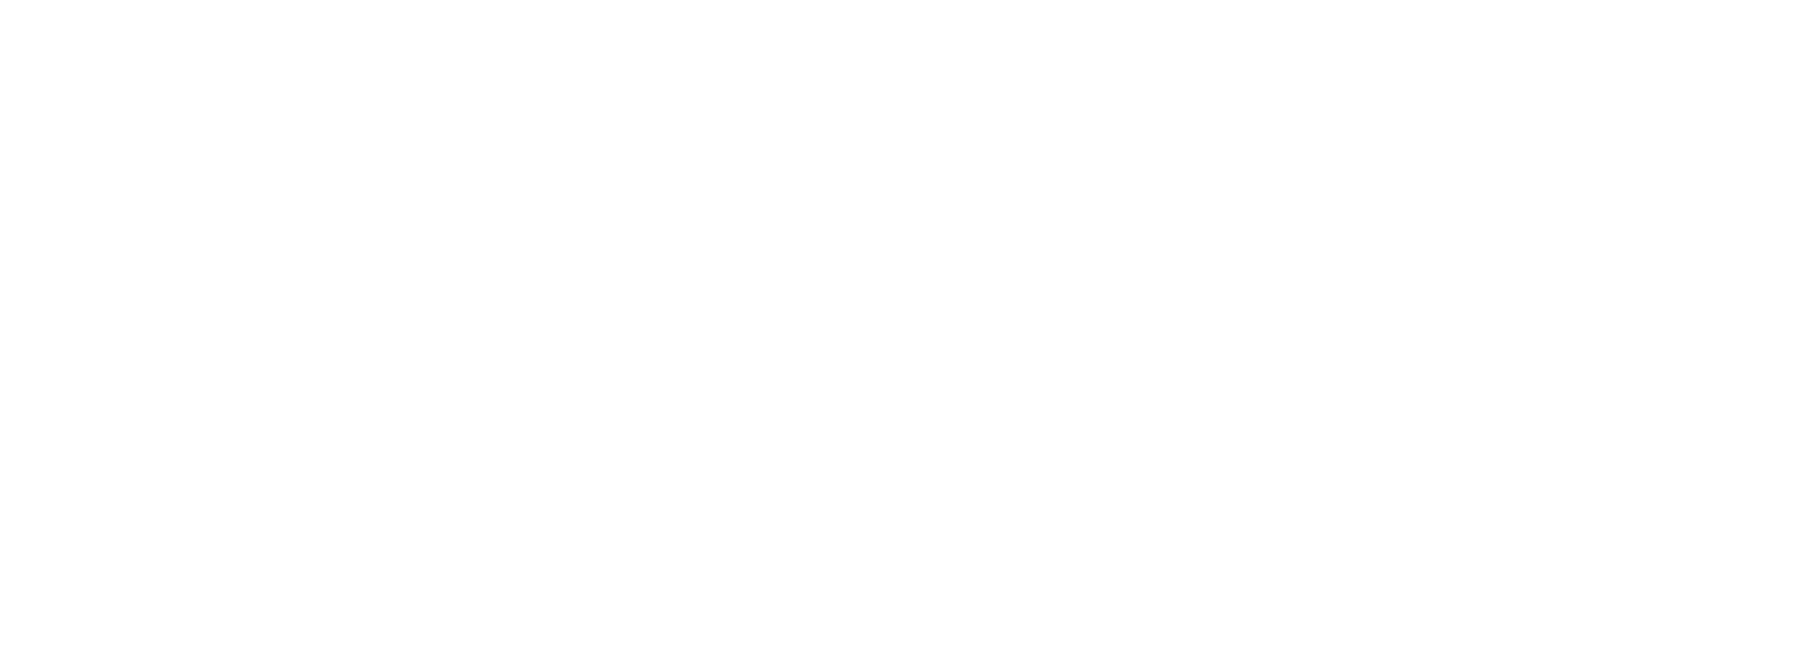 Harmony School